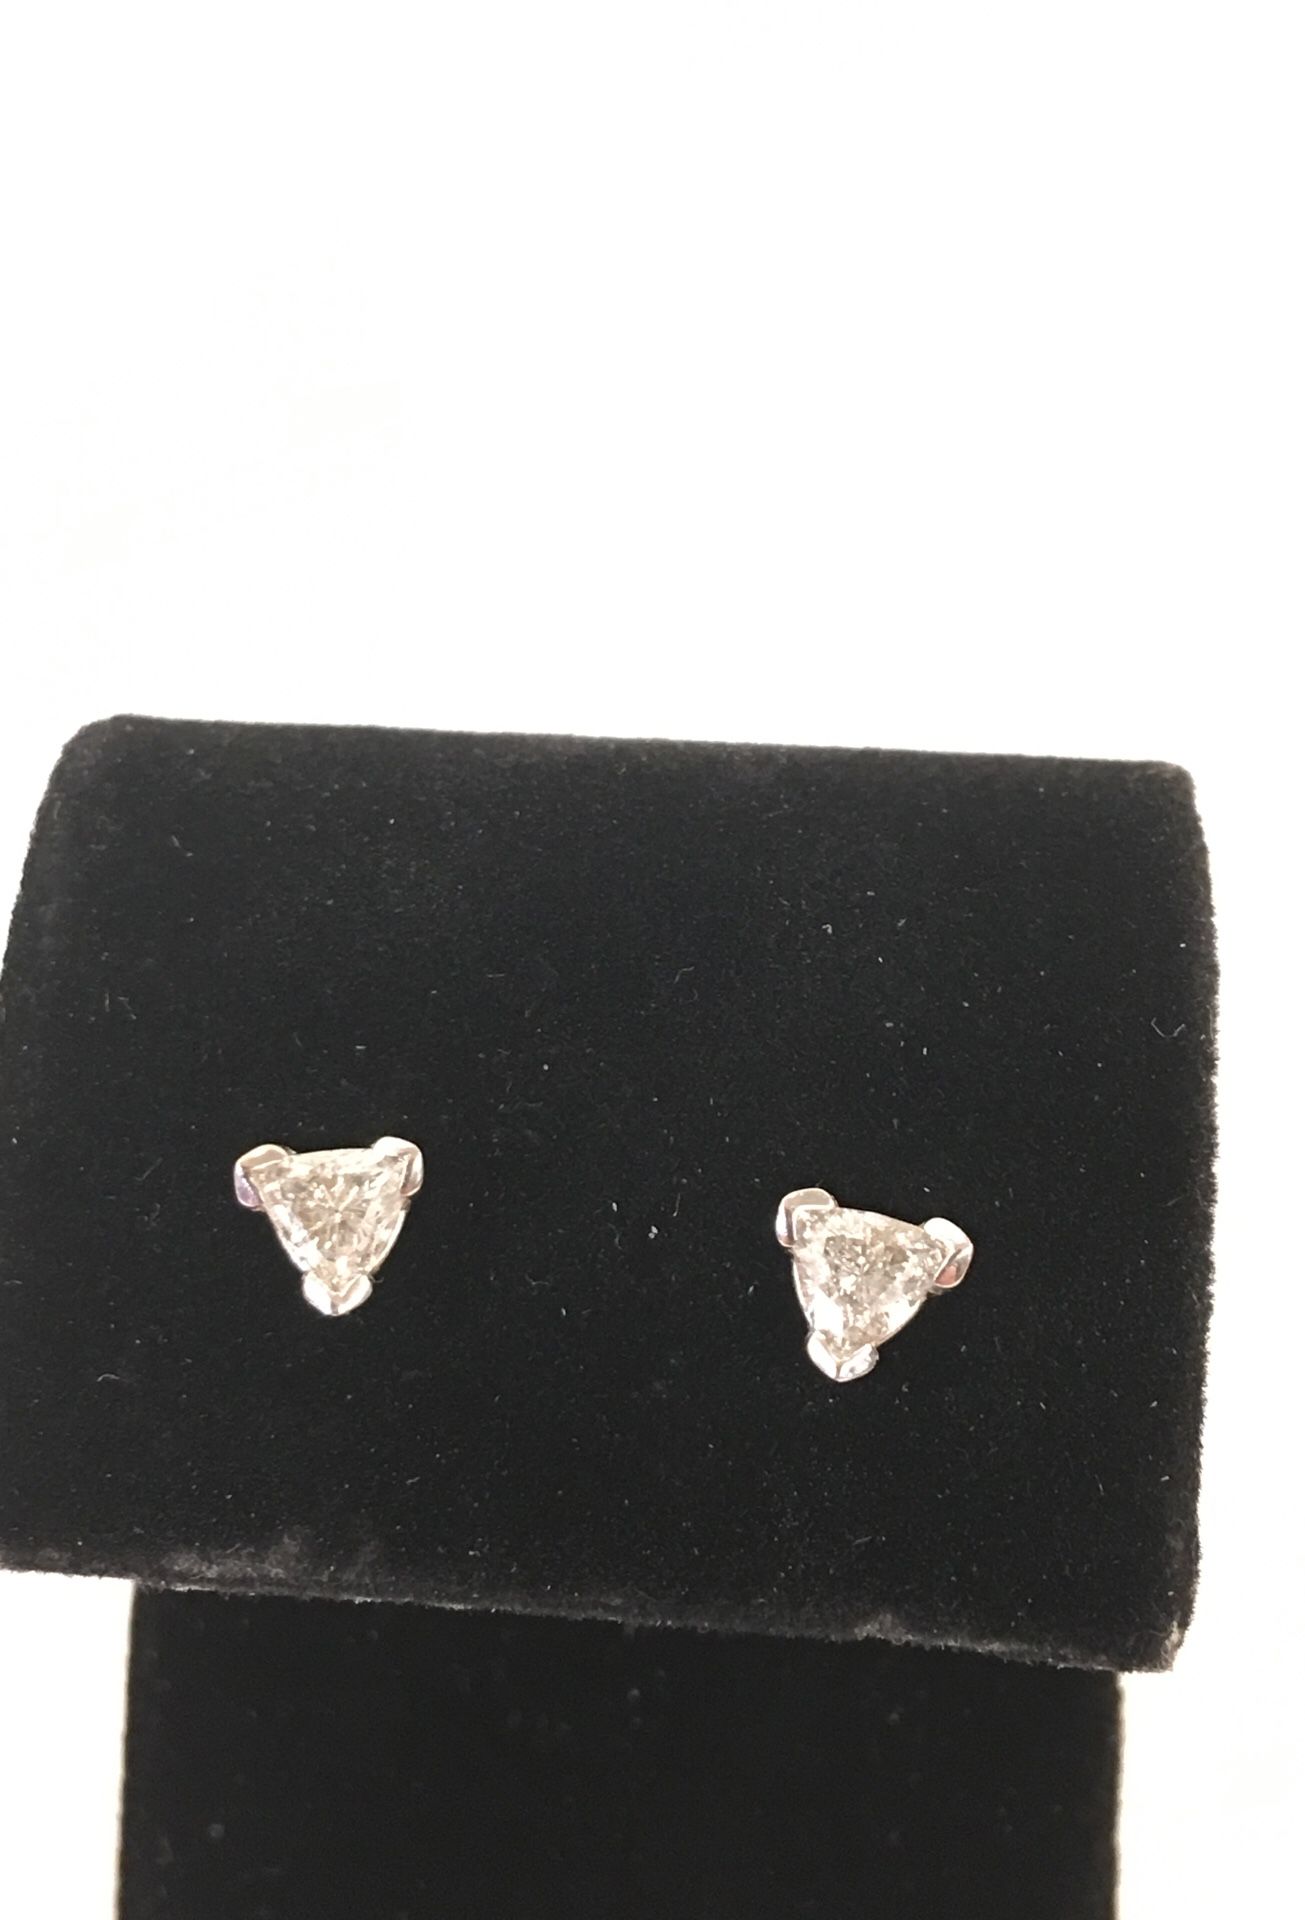 Ladies diamond earrings